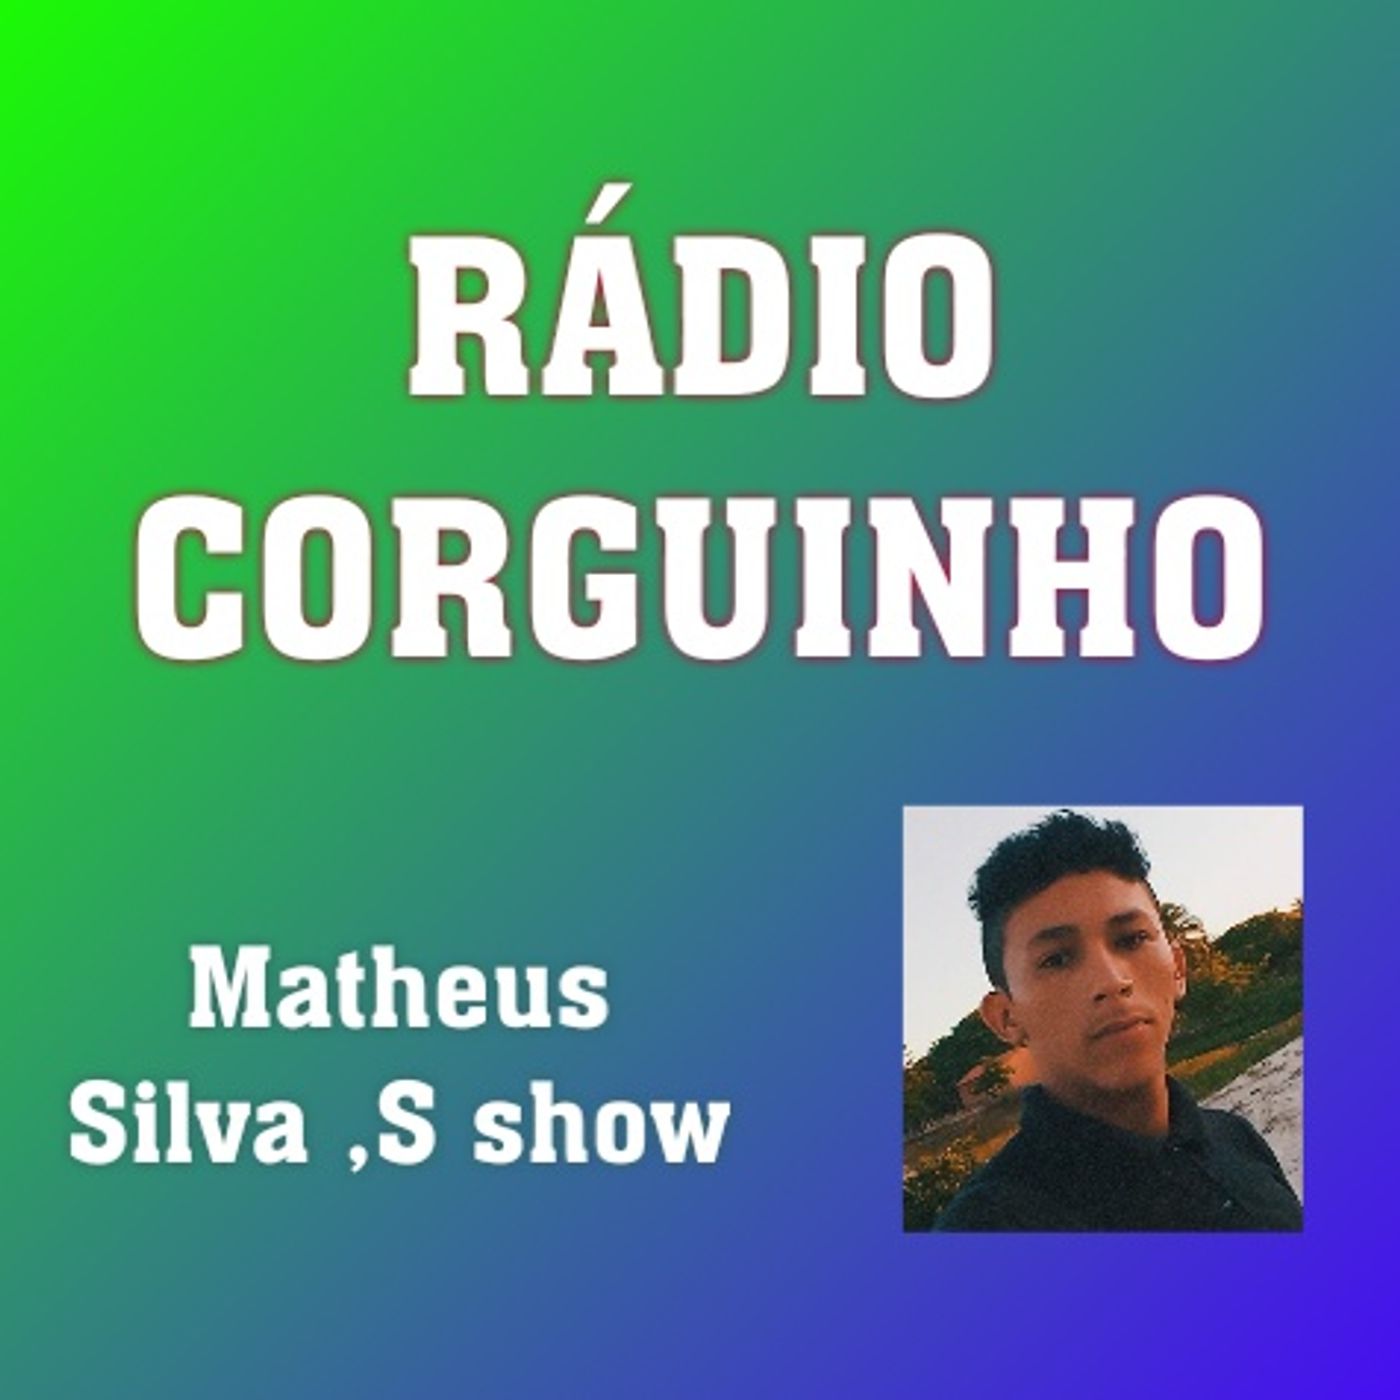 Matheus Silva's show